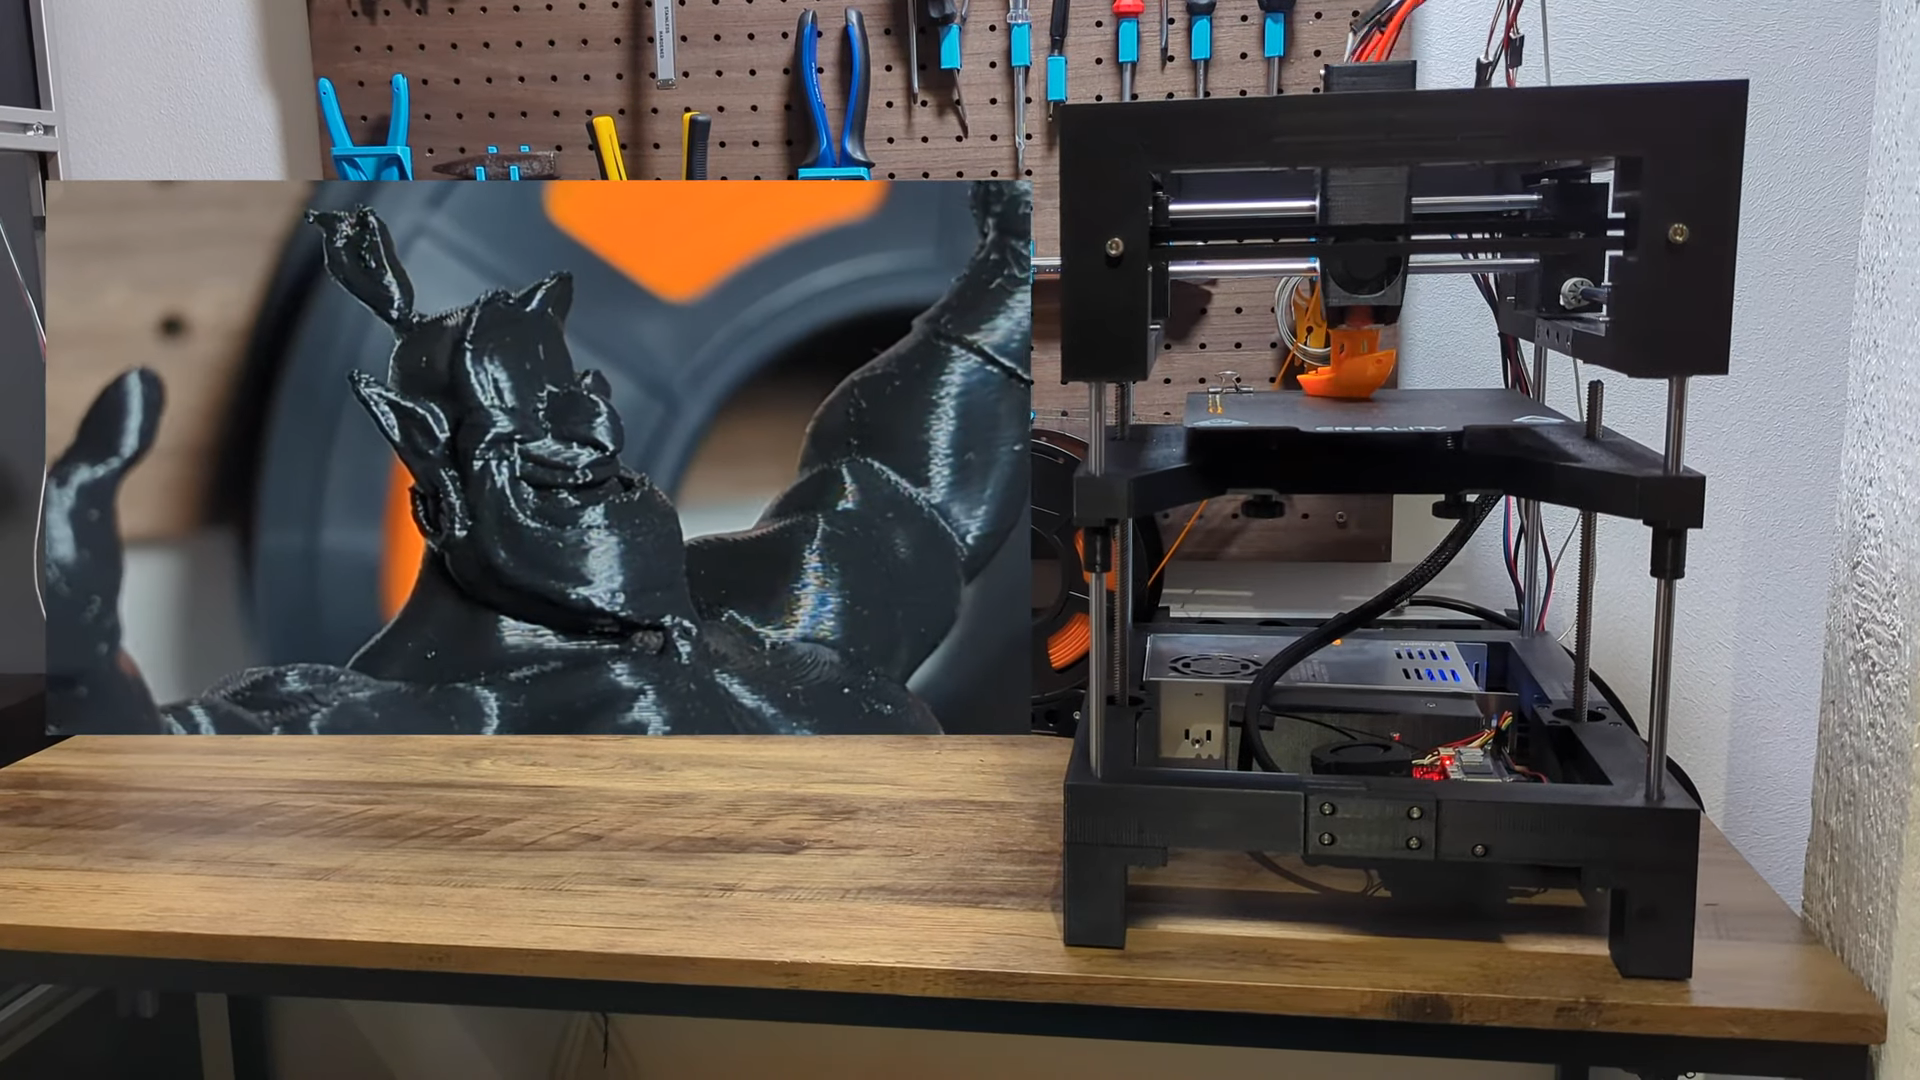 Peças impressas em 3D não retardam esta impressora rápida